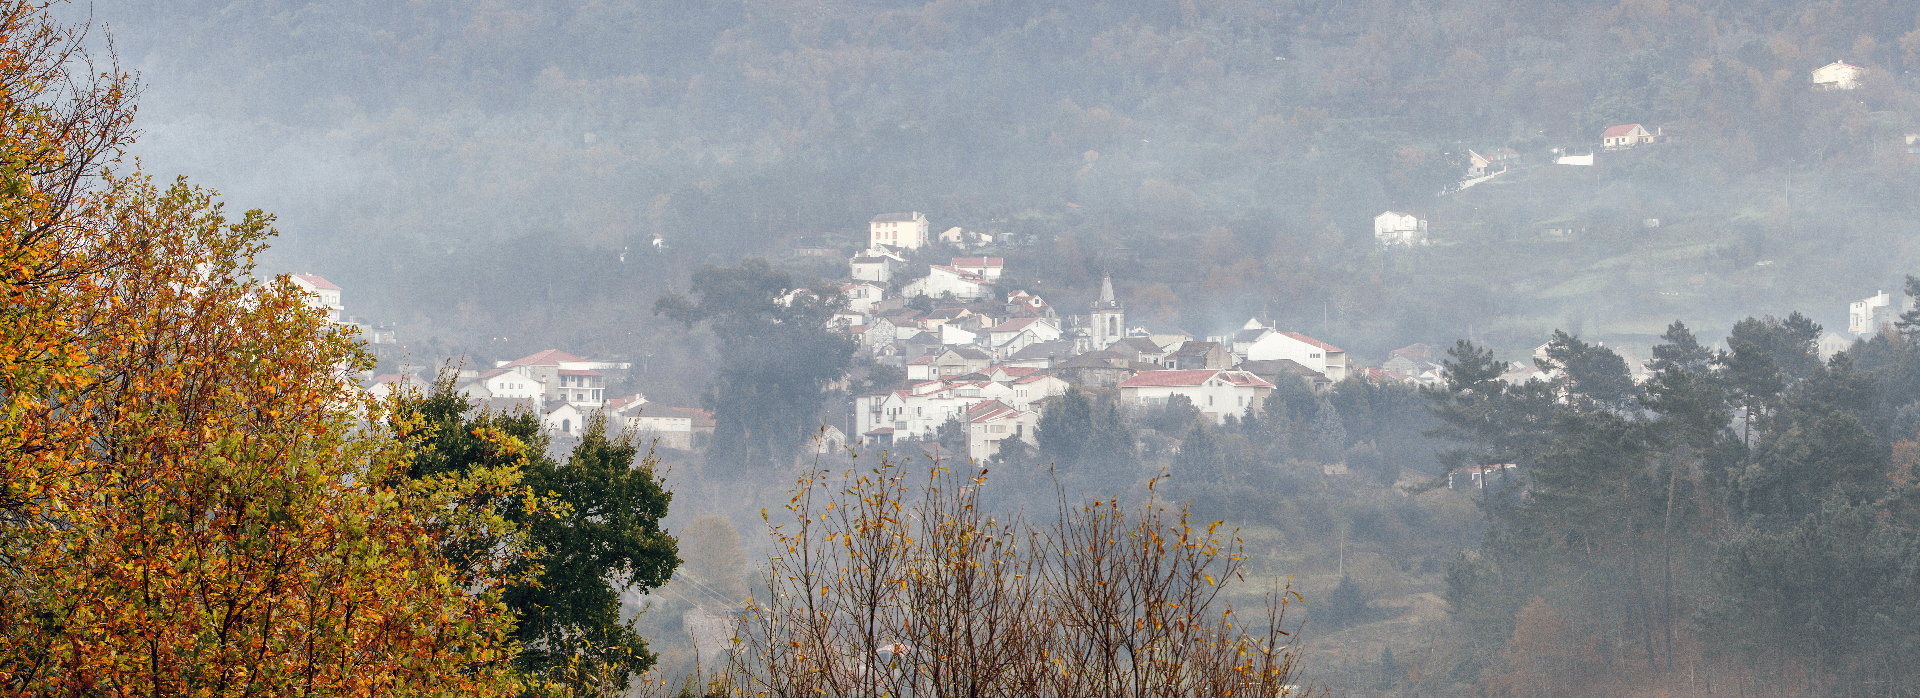 View over S. Gião